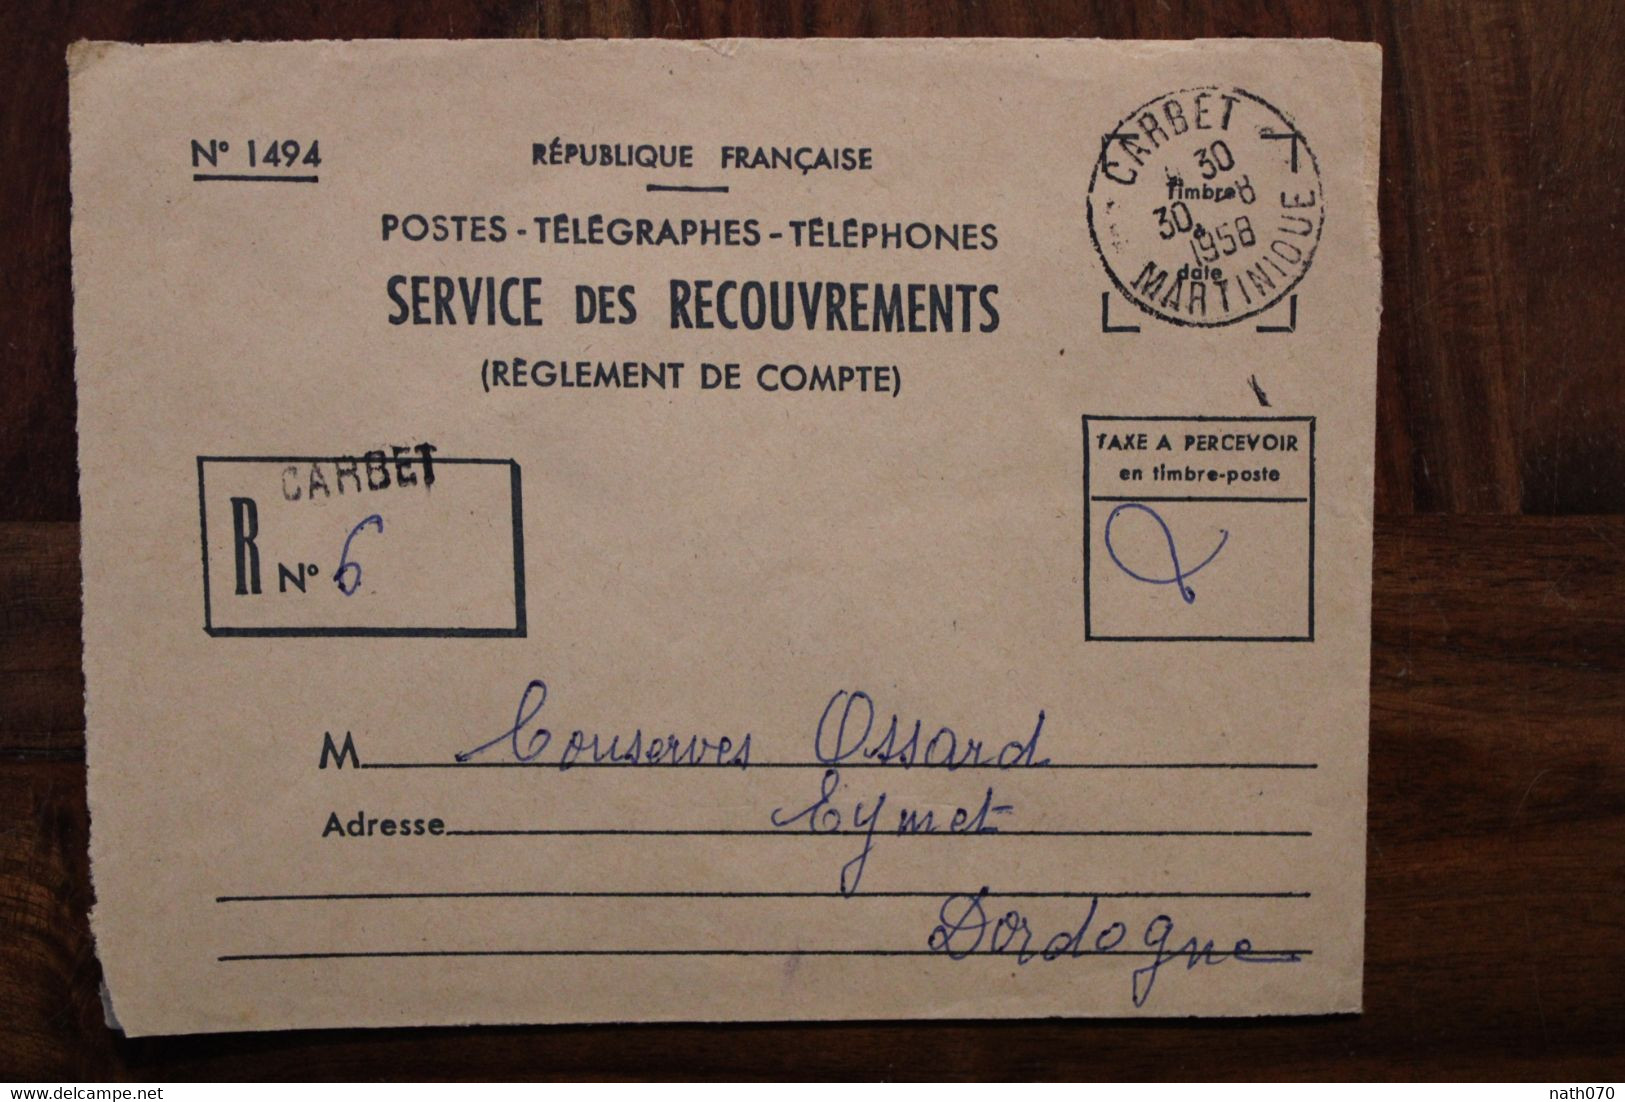 Martinique 1958 Carbet Cover Enveloppe PTT Recouvrement France Oblit. Mécanique Taxe Recommandé - Lettres & Documents